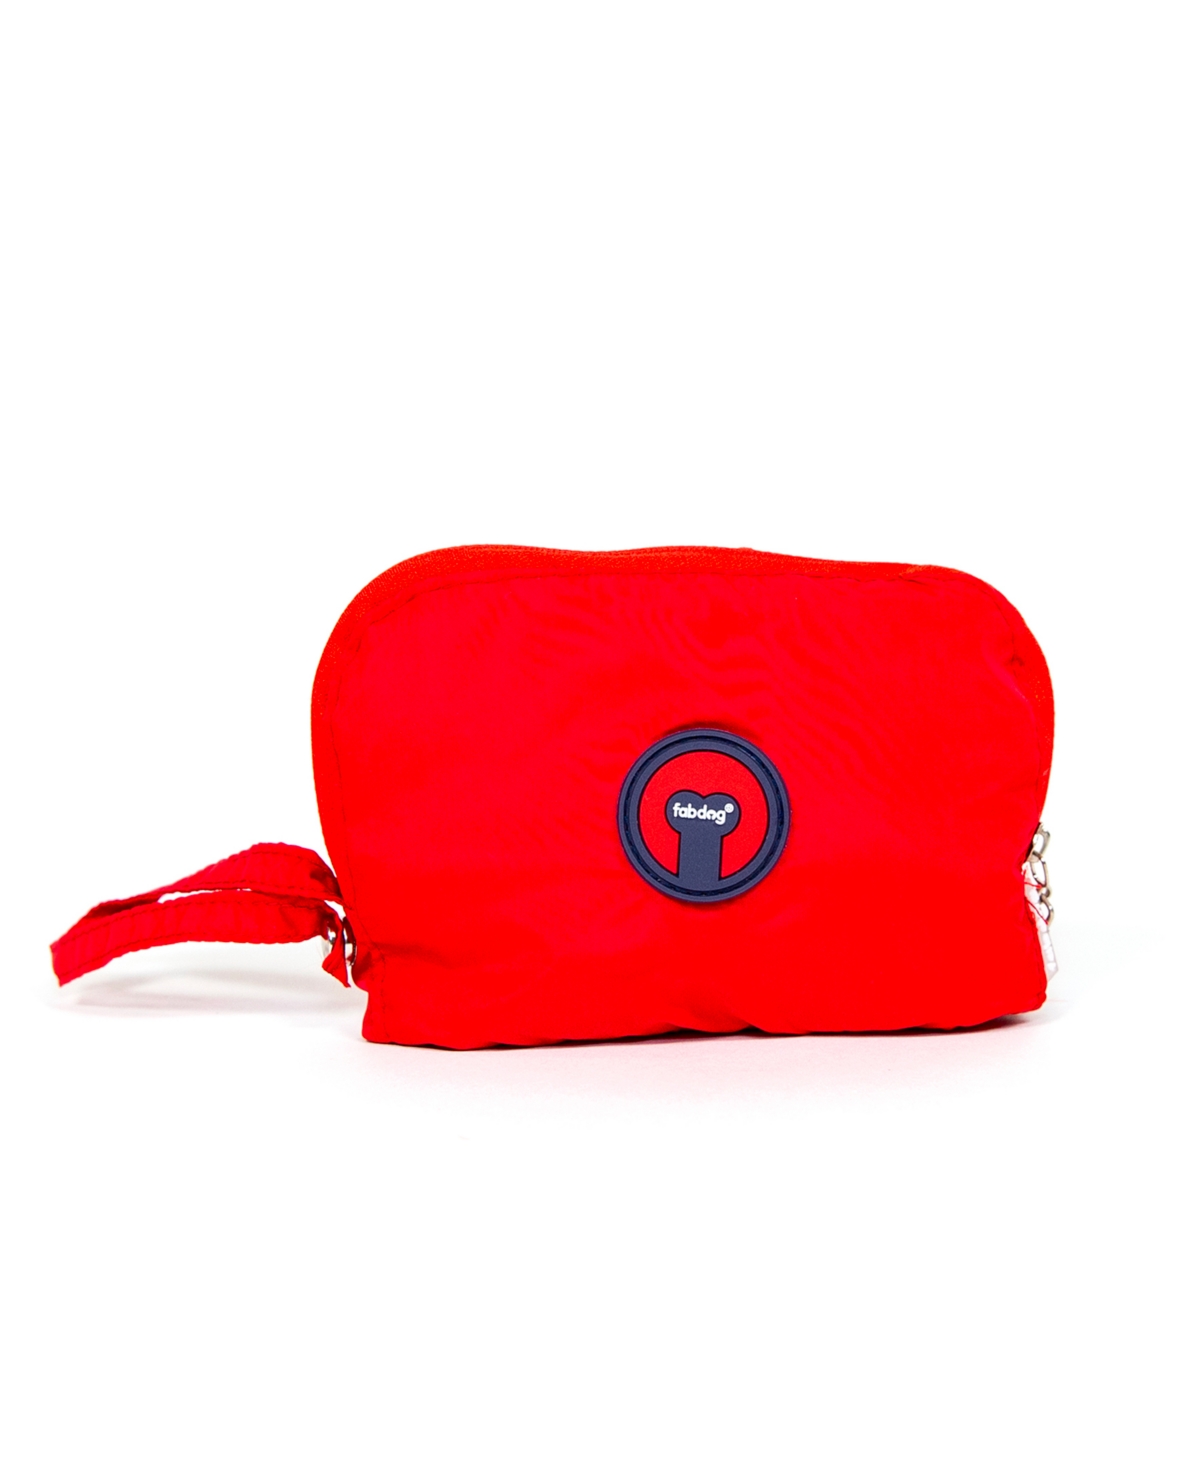 Red Packaway Raincoat - Red